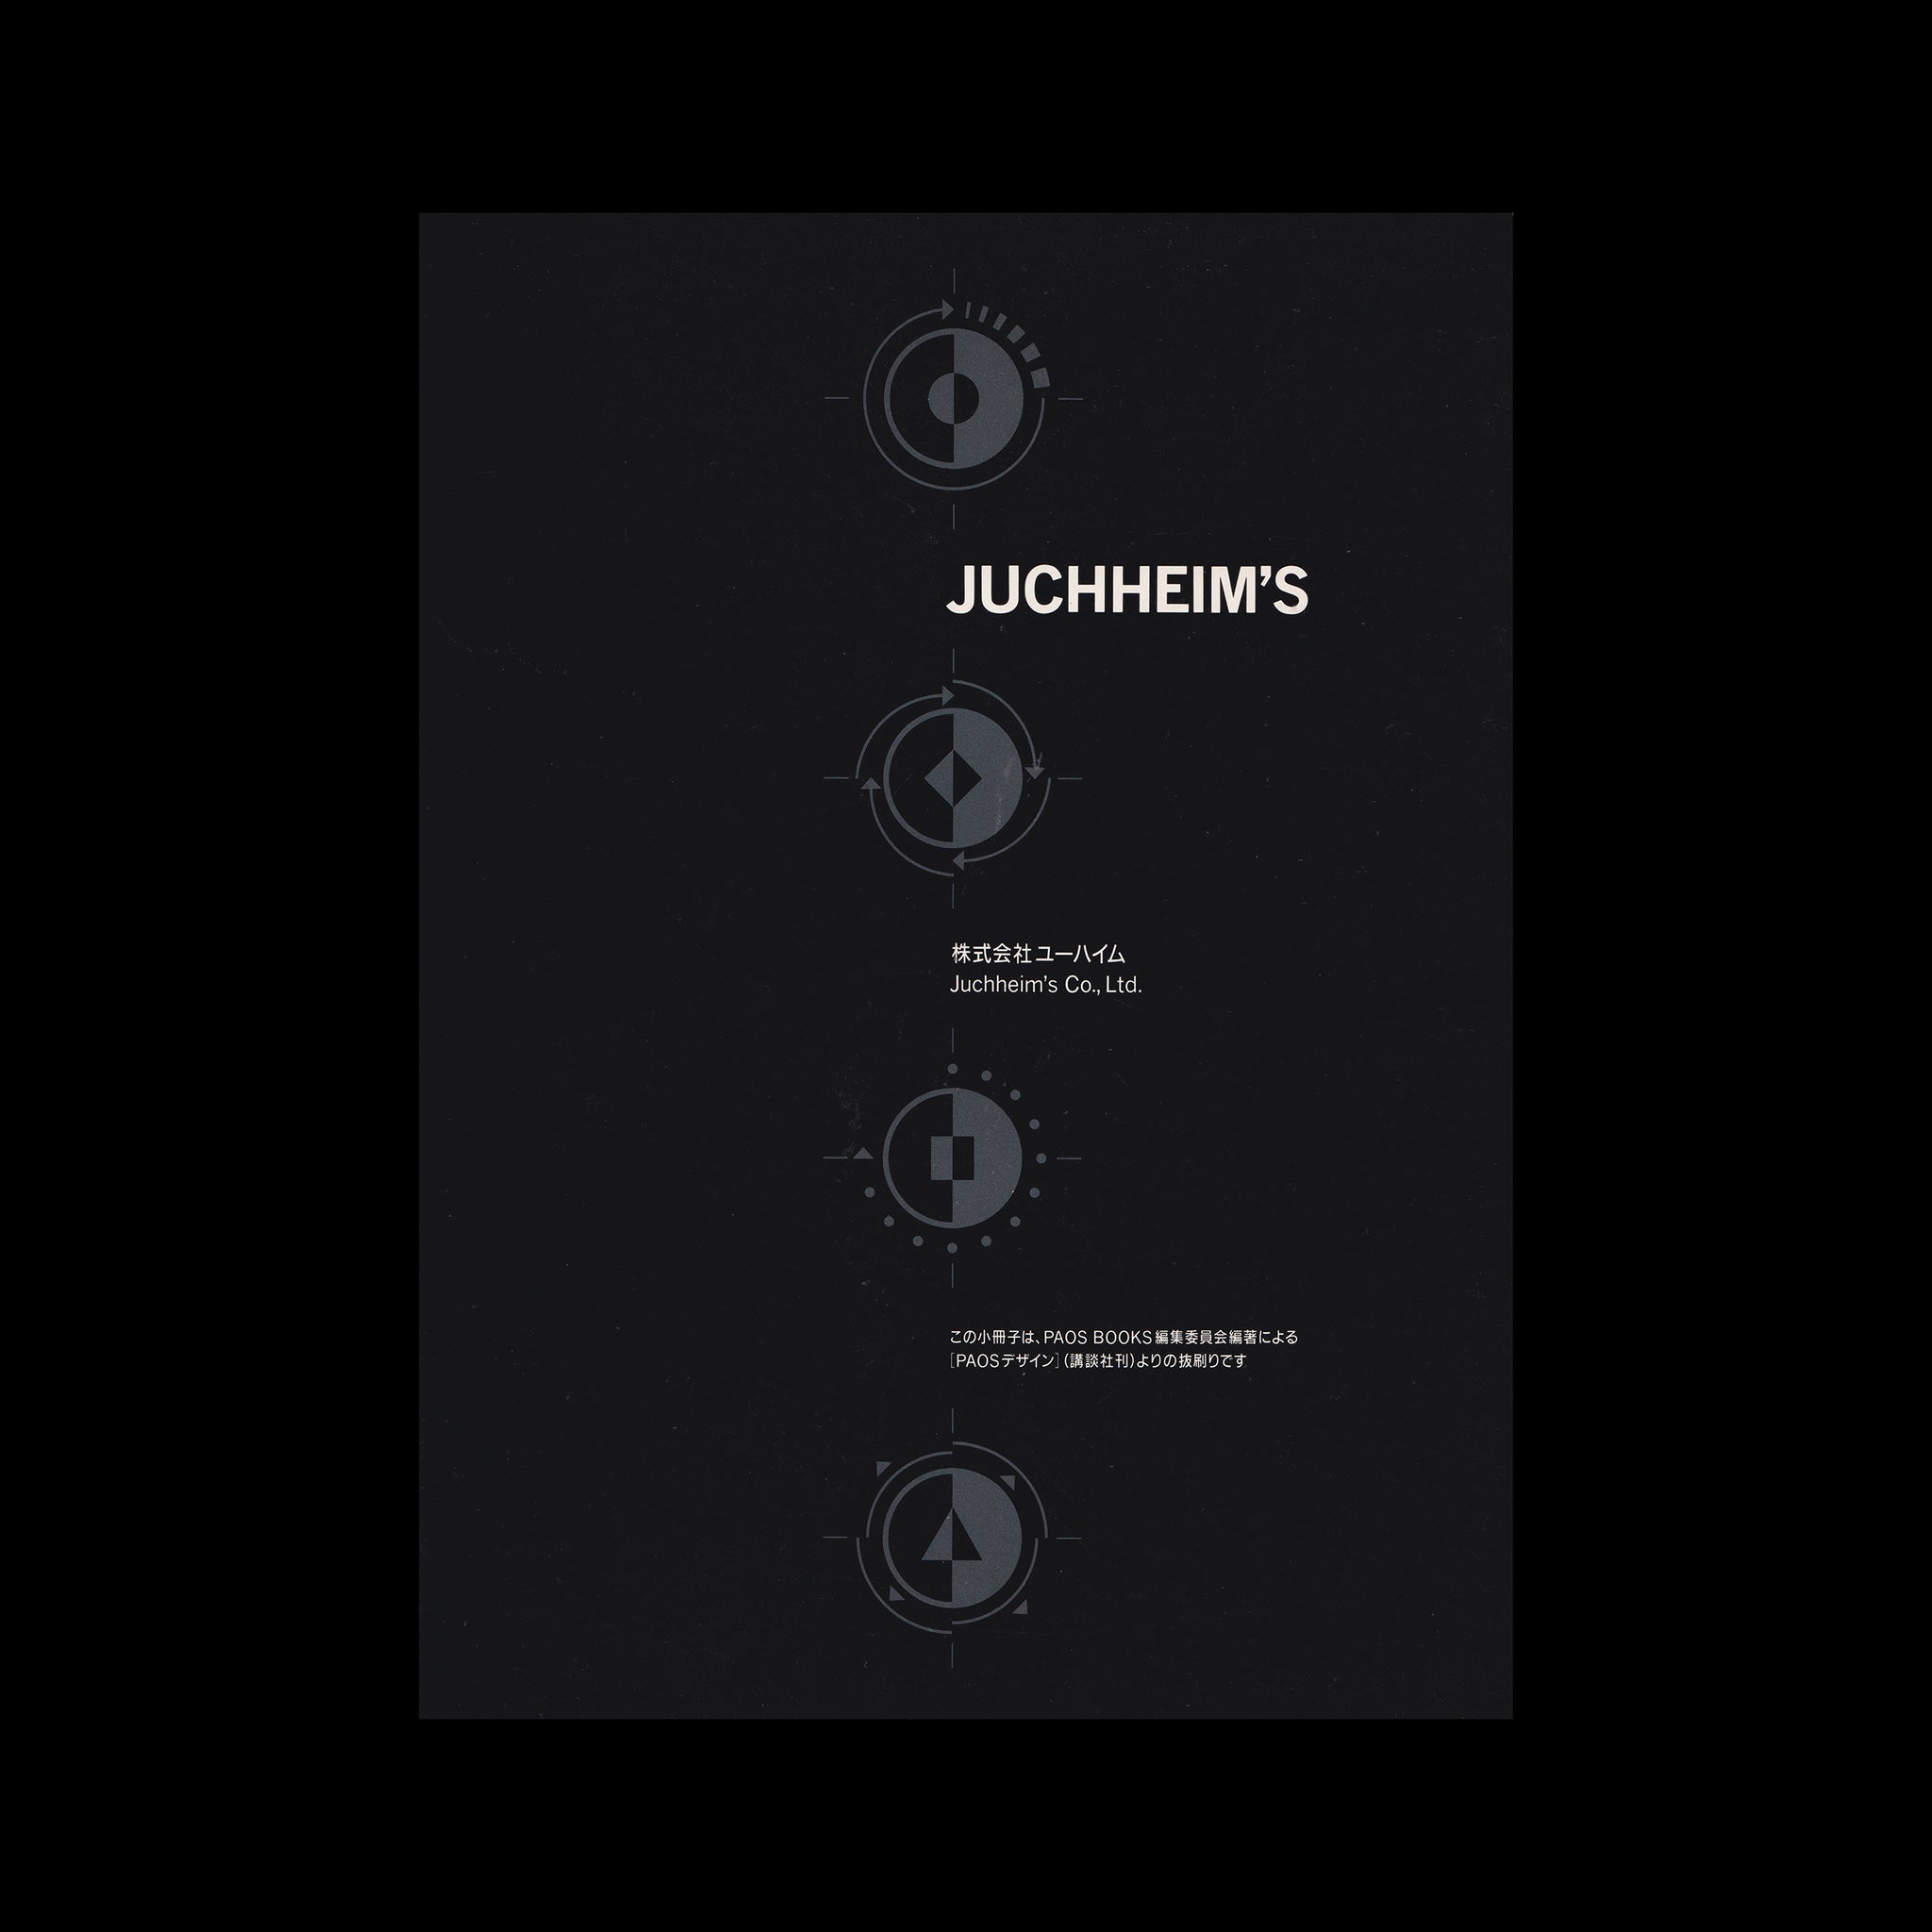 Juchheim's Corporate Identity